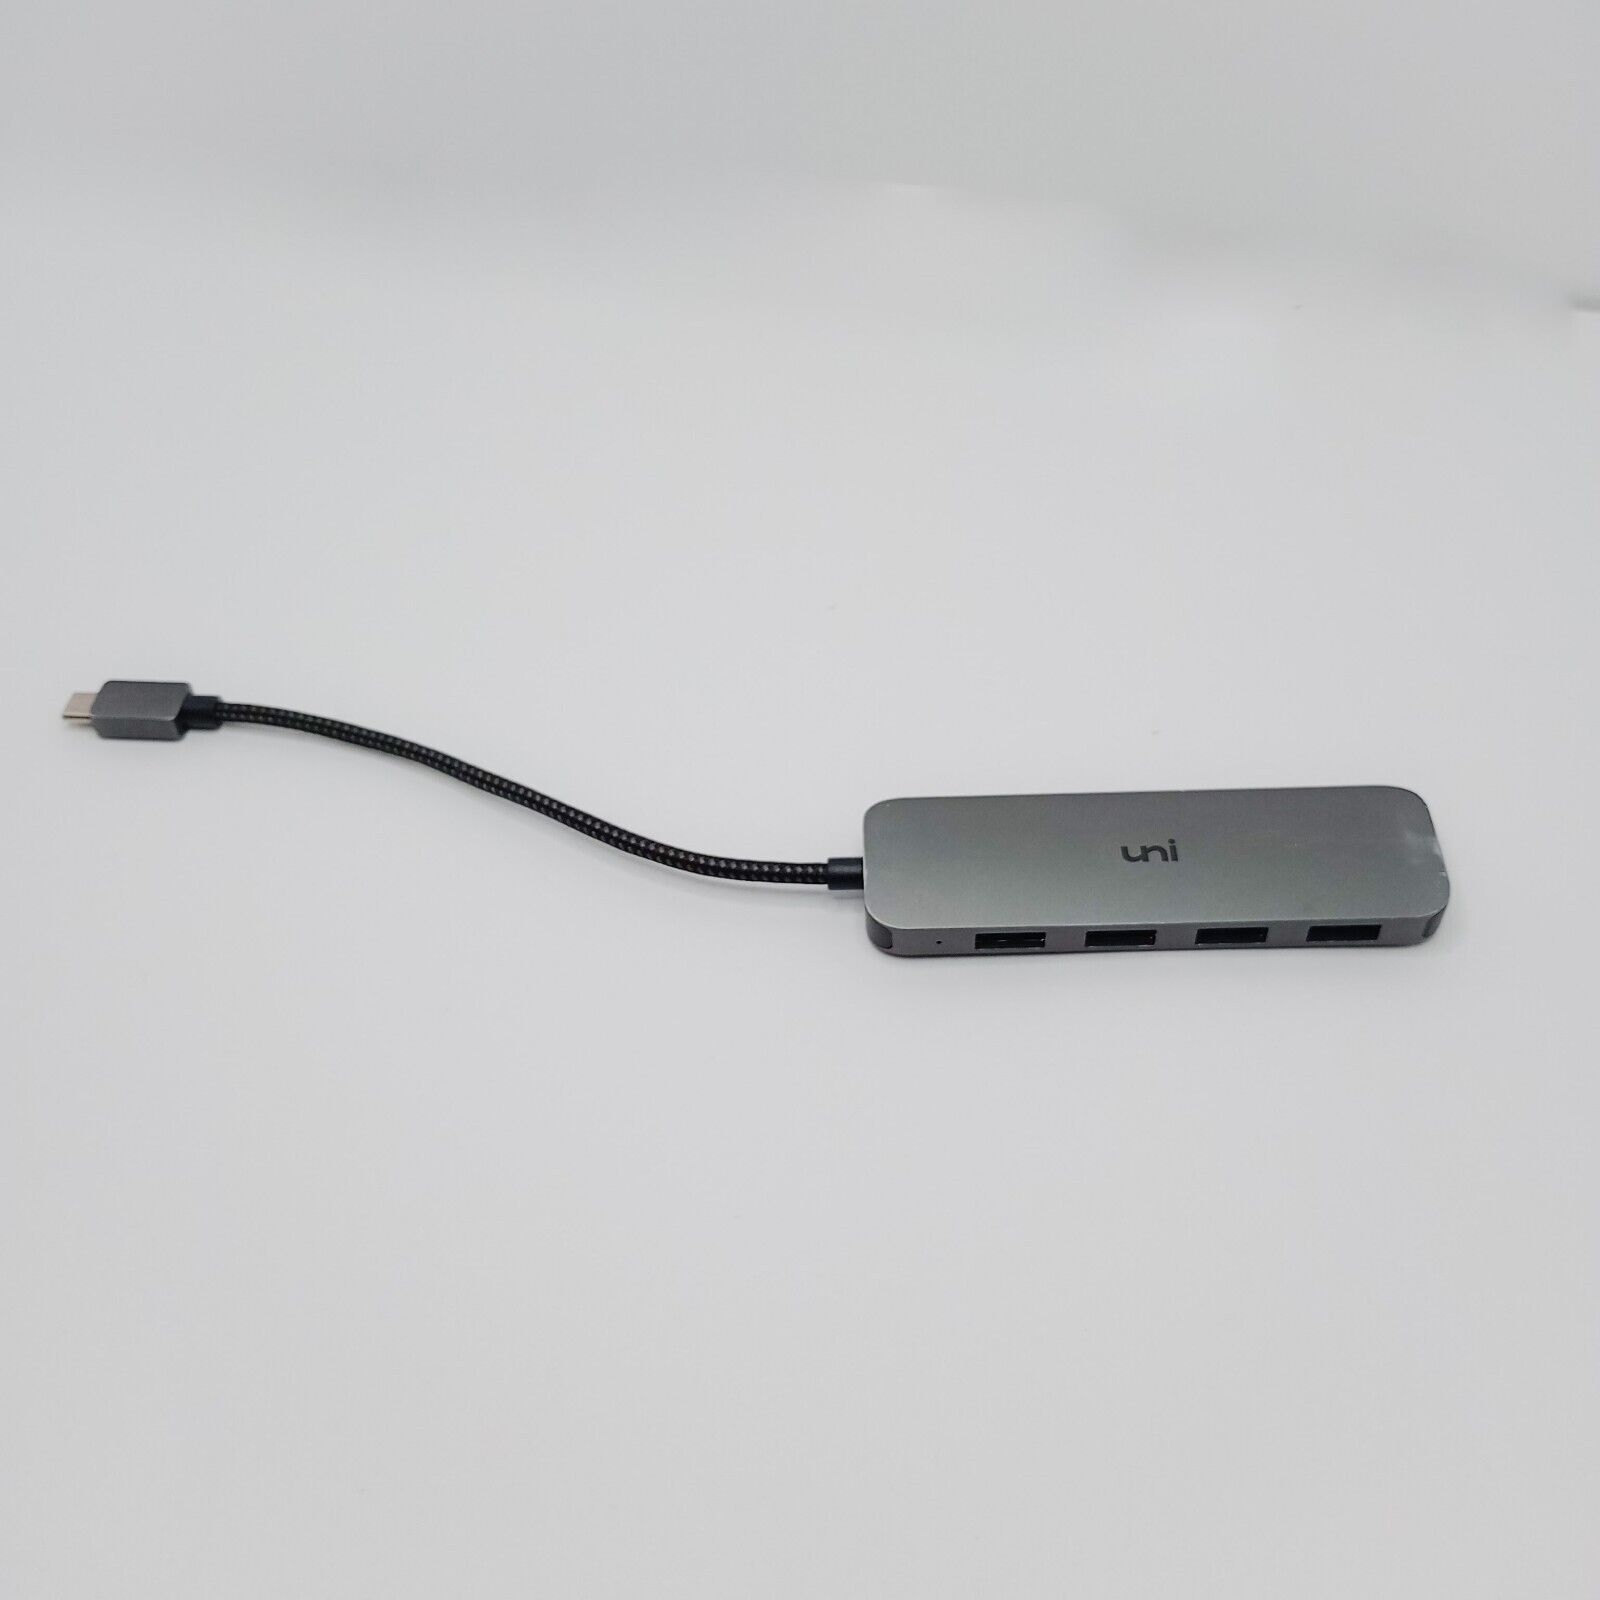 USED  UNI USB C HUB HDMI VGA Adapter  Port HUB 